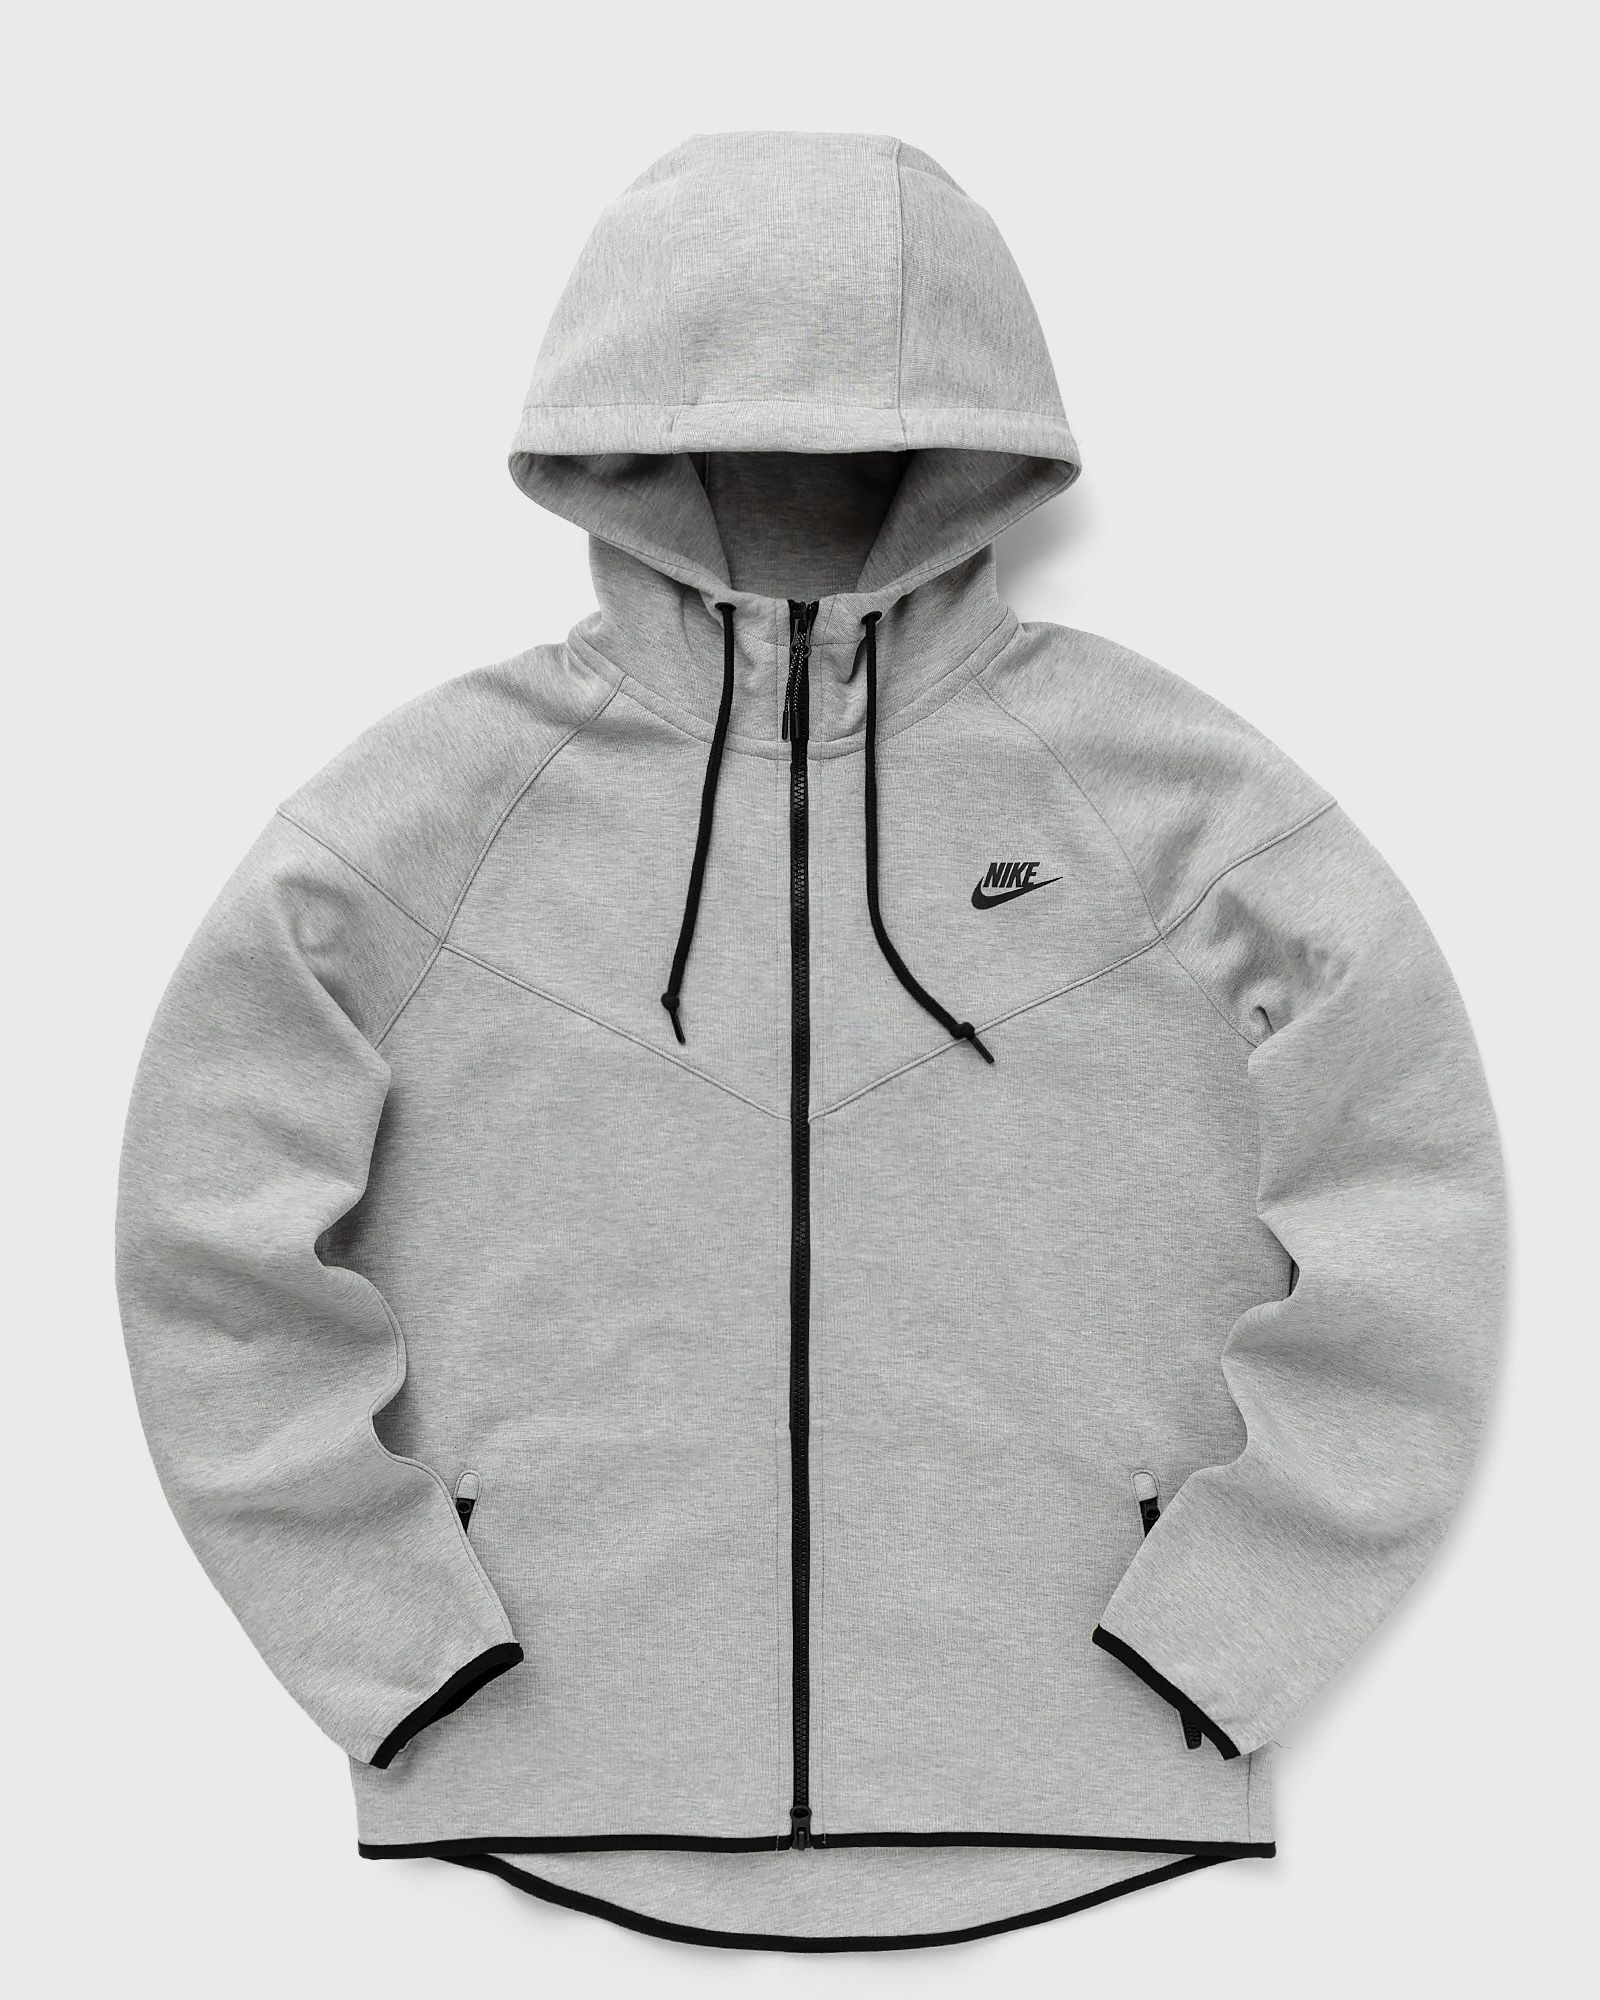 Nike - tech fleece og men hoodies|zippers grey in größe:l